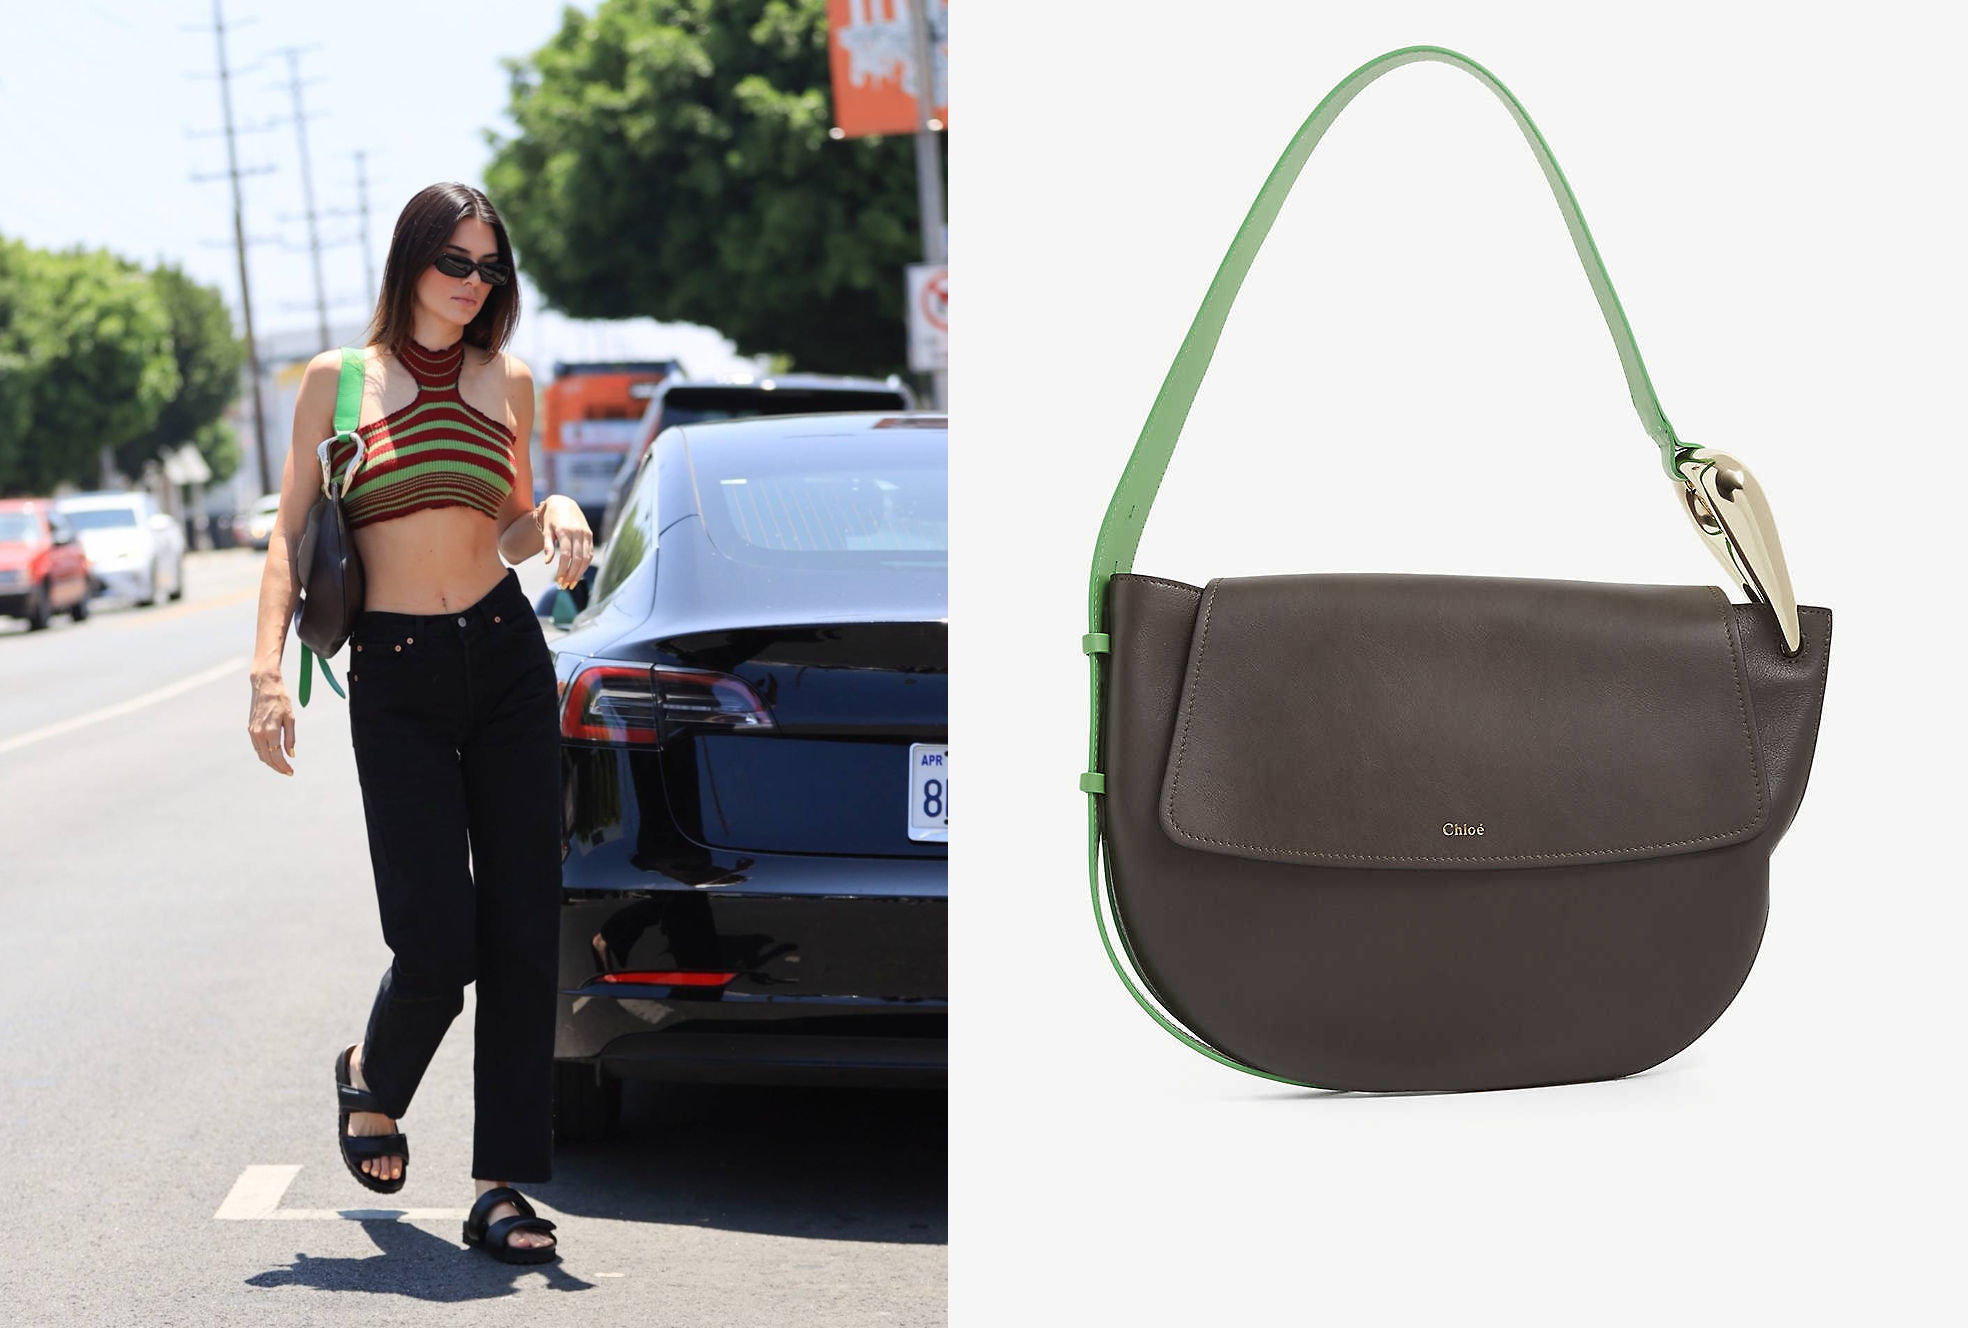 Mini bag trend 2018 - Kendall Jenner's new tiny bag